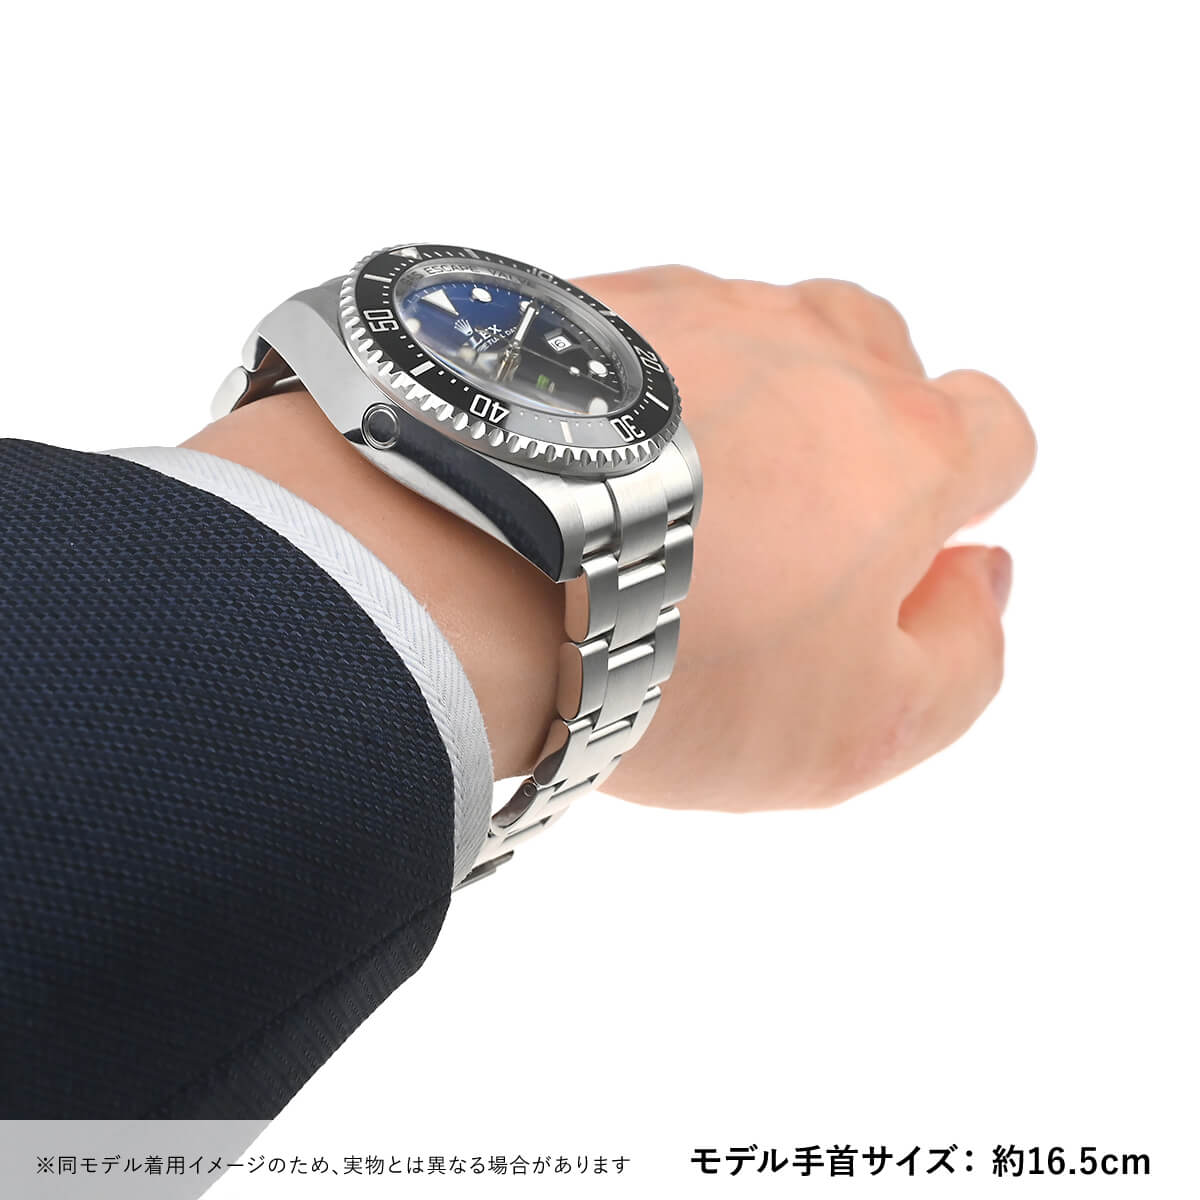 ロレックス ROLEX シードゥエラーディープシー Dブルー 136660 新品 メンズ 腕時計